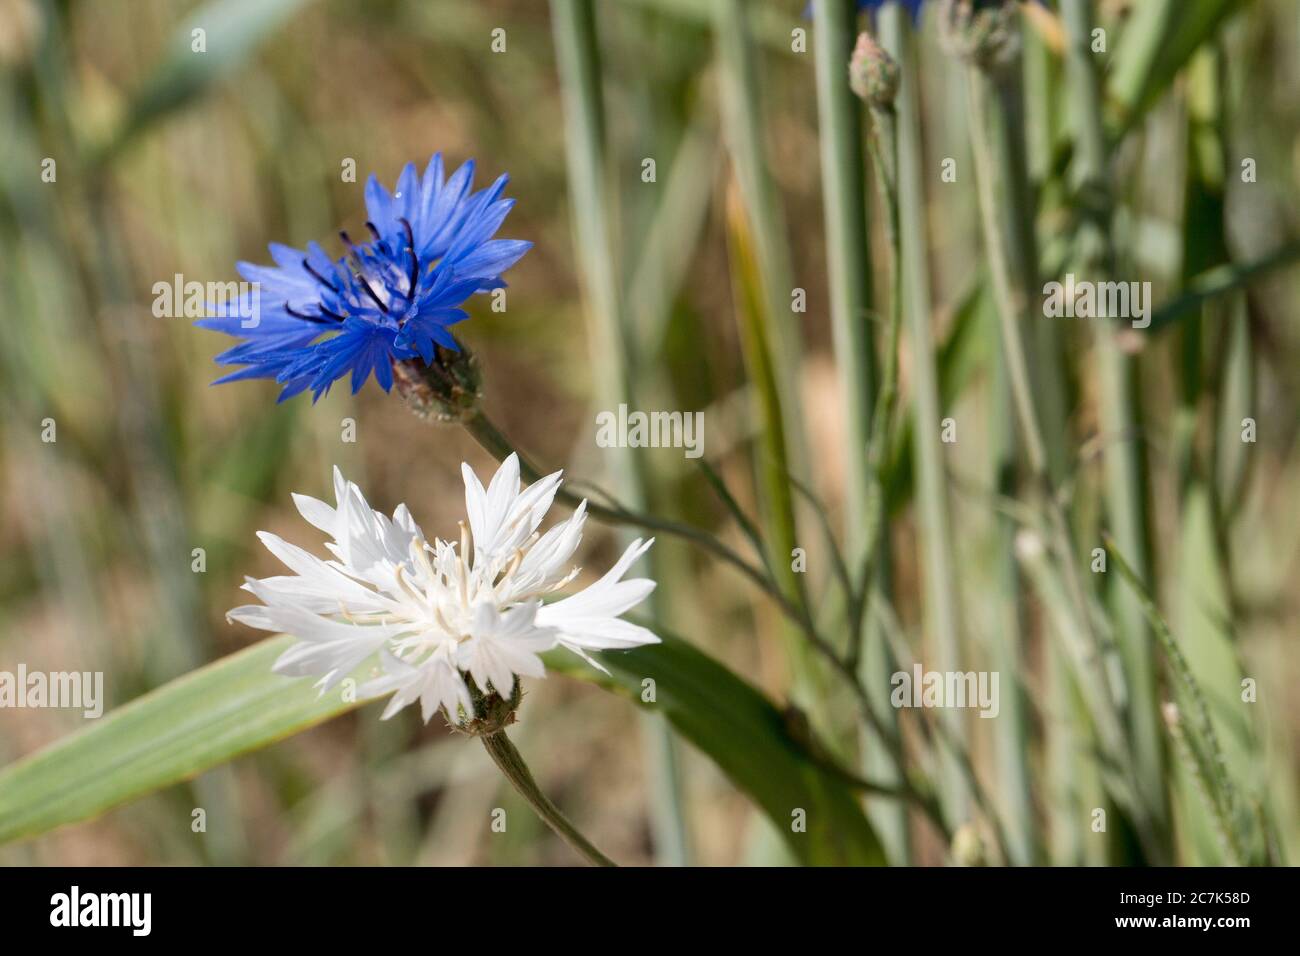 blue and white rare albino cornflower in wheat field Stock Photo